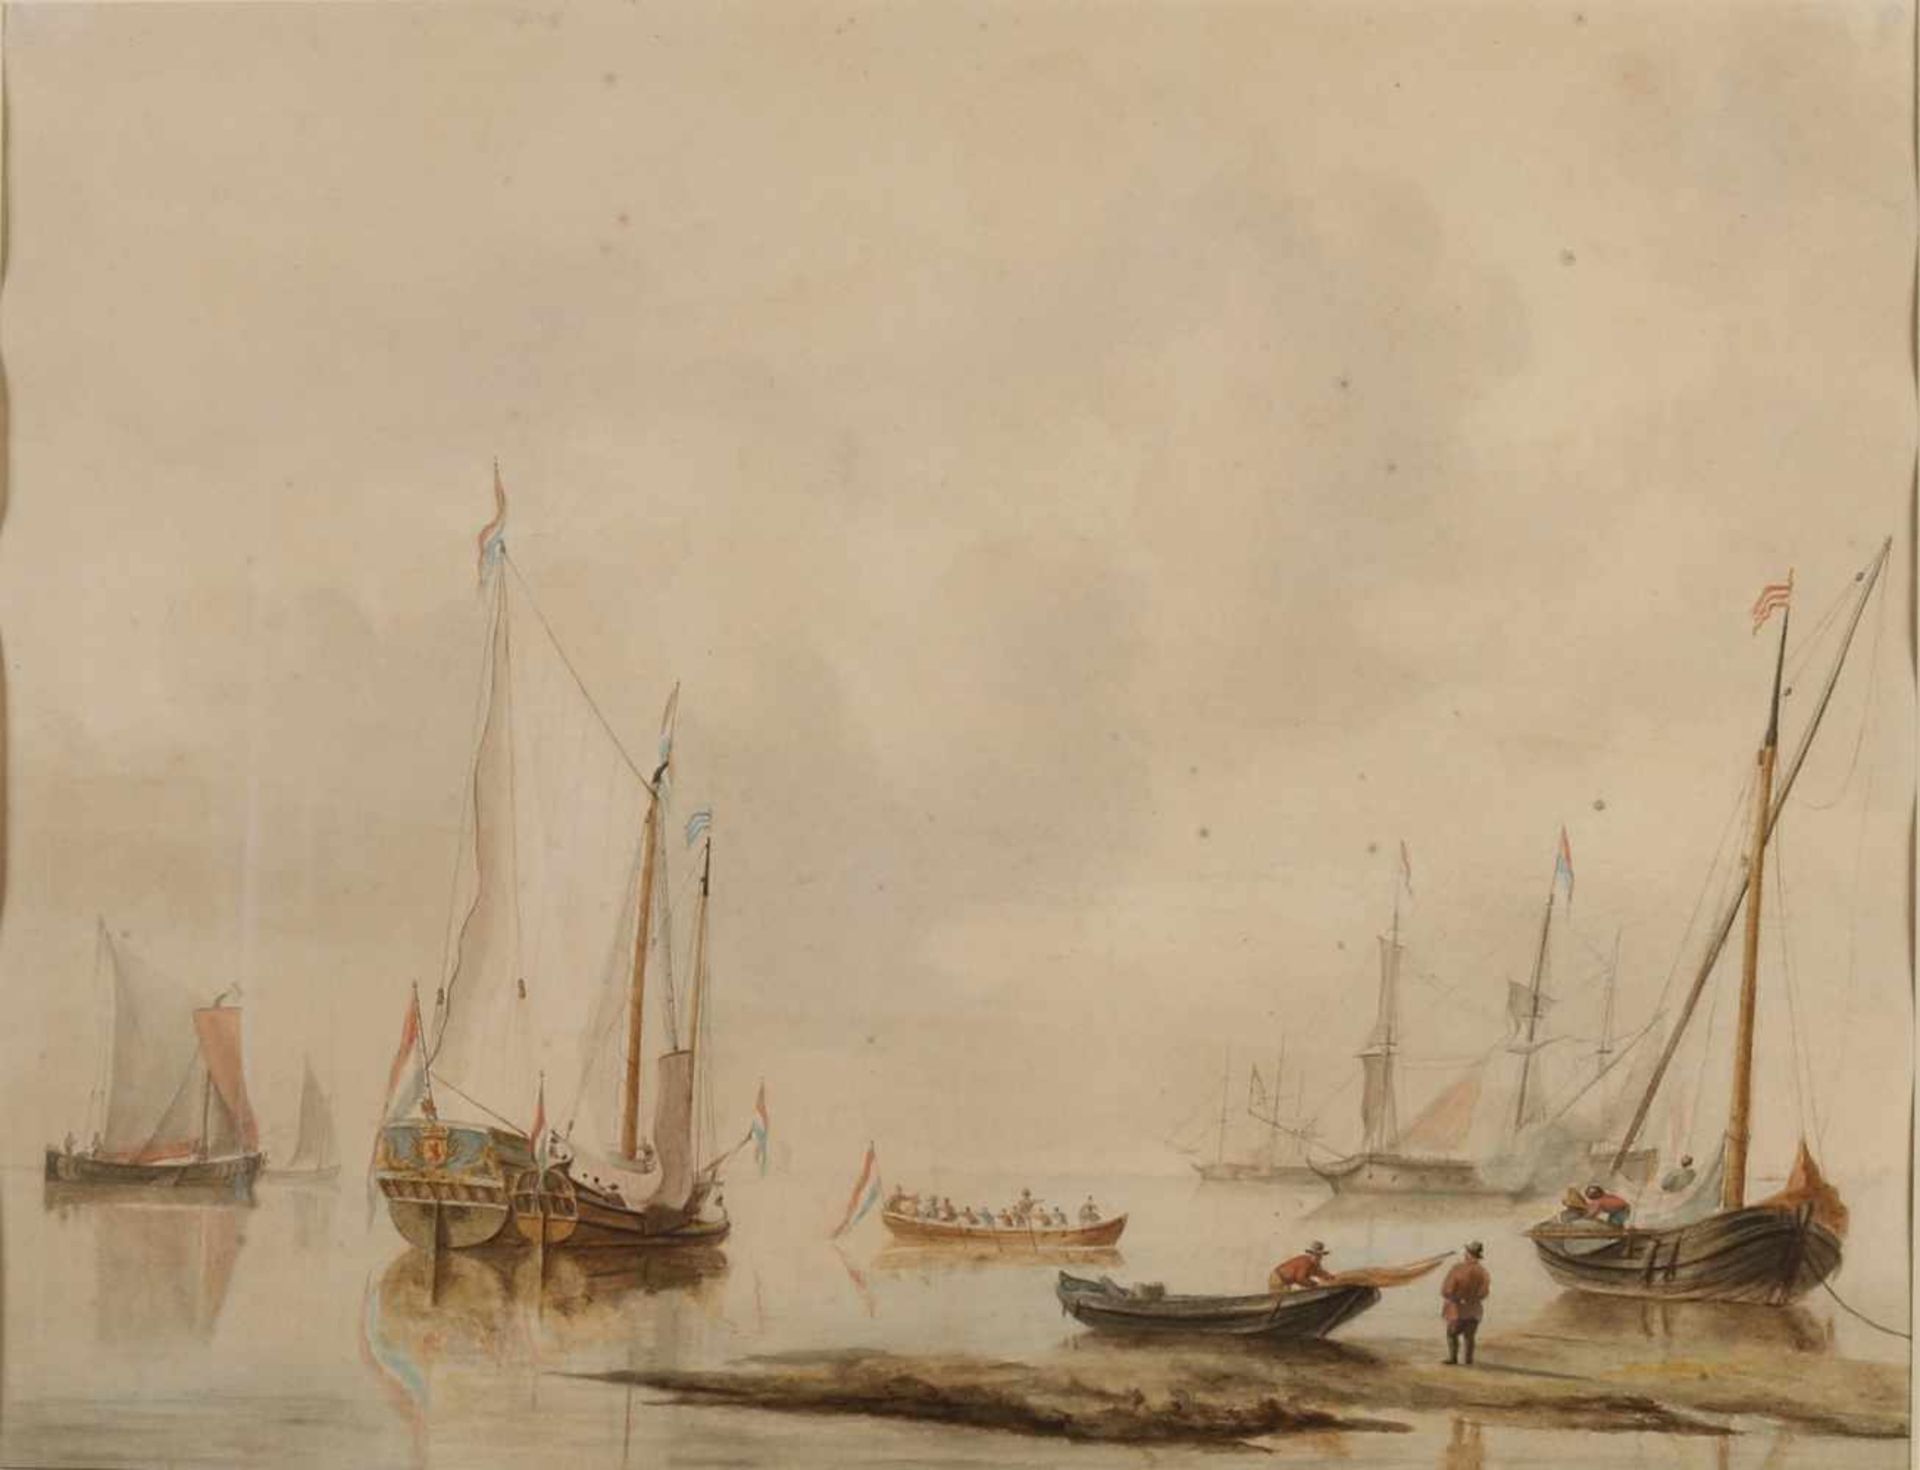 Izaak Schouman zugeschrieben. 1801 - 1878. Niederländische Schiffe auf ruhiger See. Aquarell auf